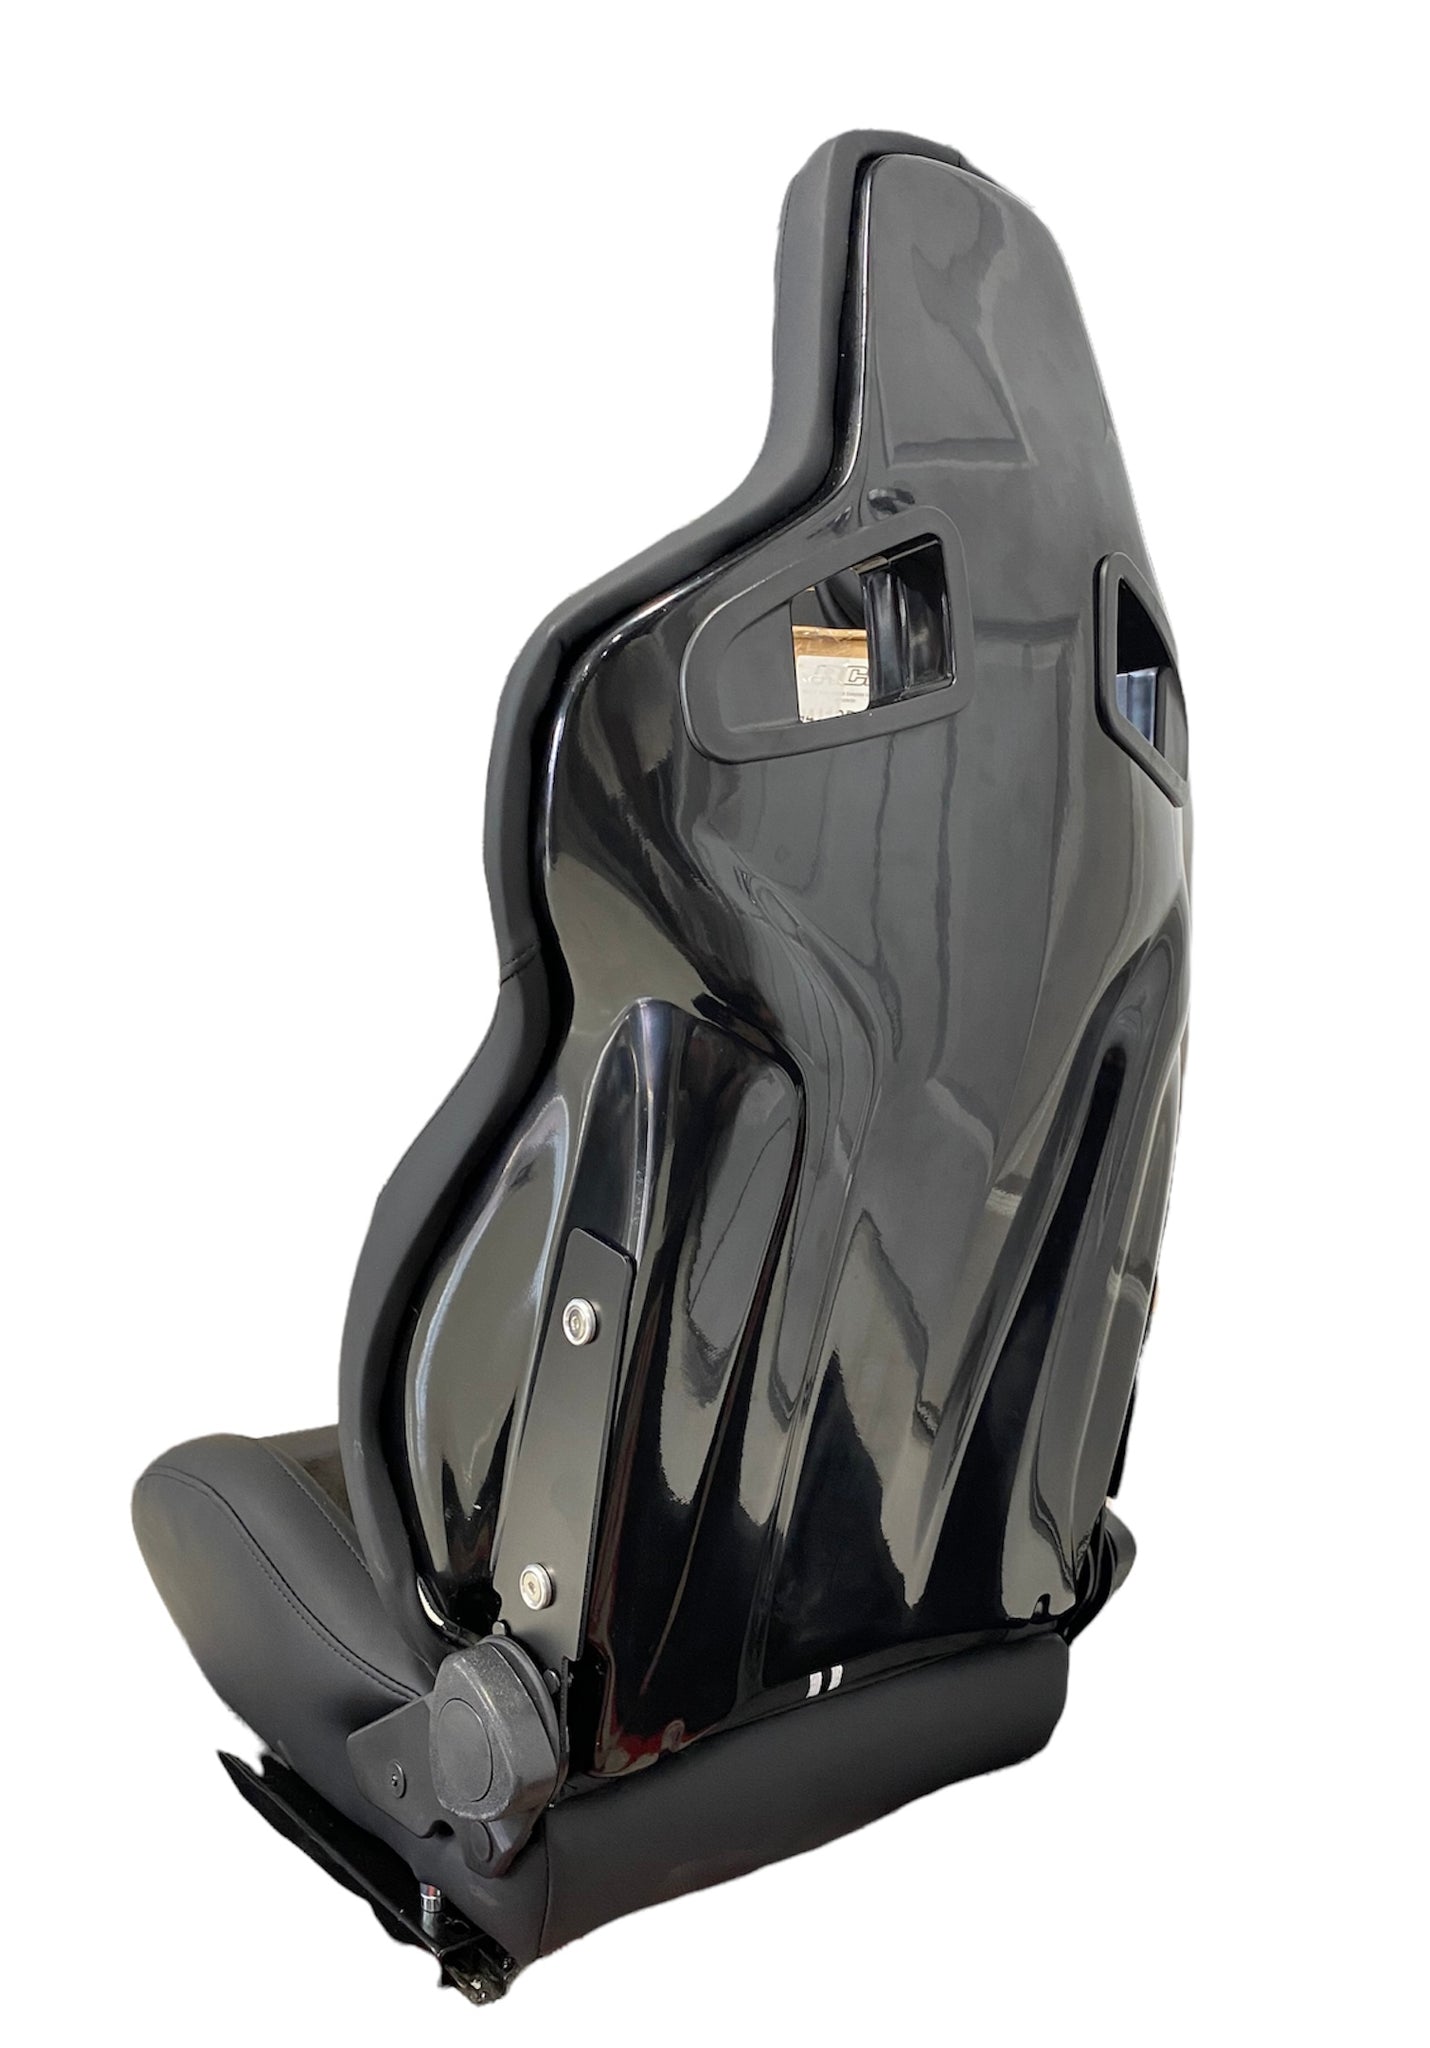 SPDZ1  GT1 Seats Black Leather/Black Suede/Double Stripe SPDZ1